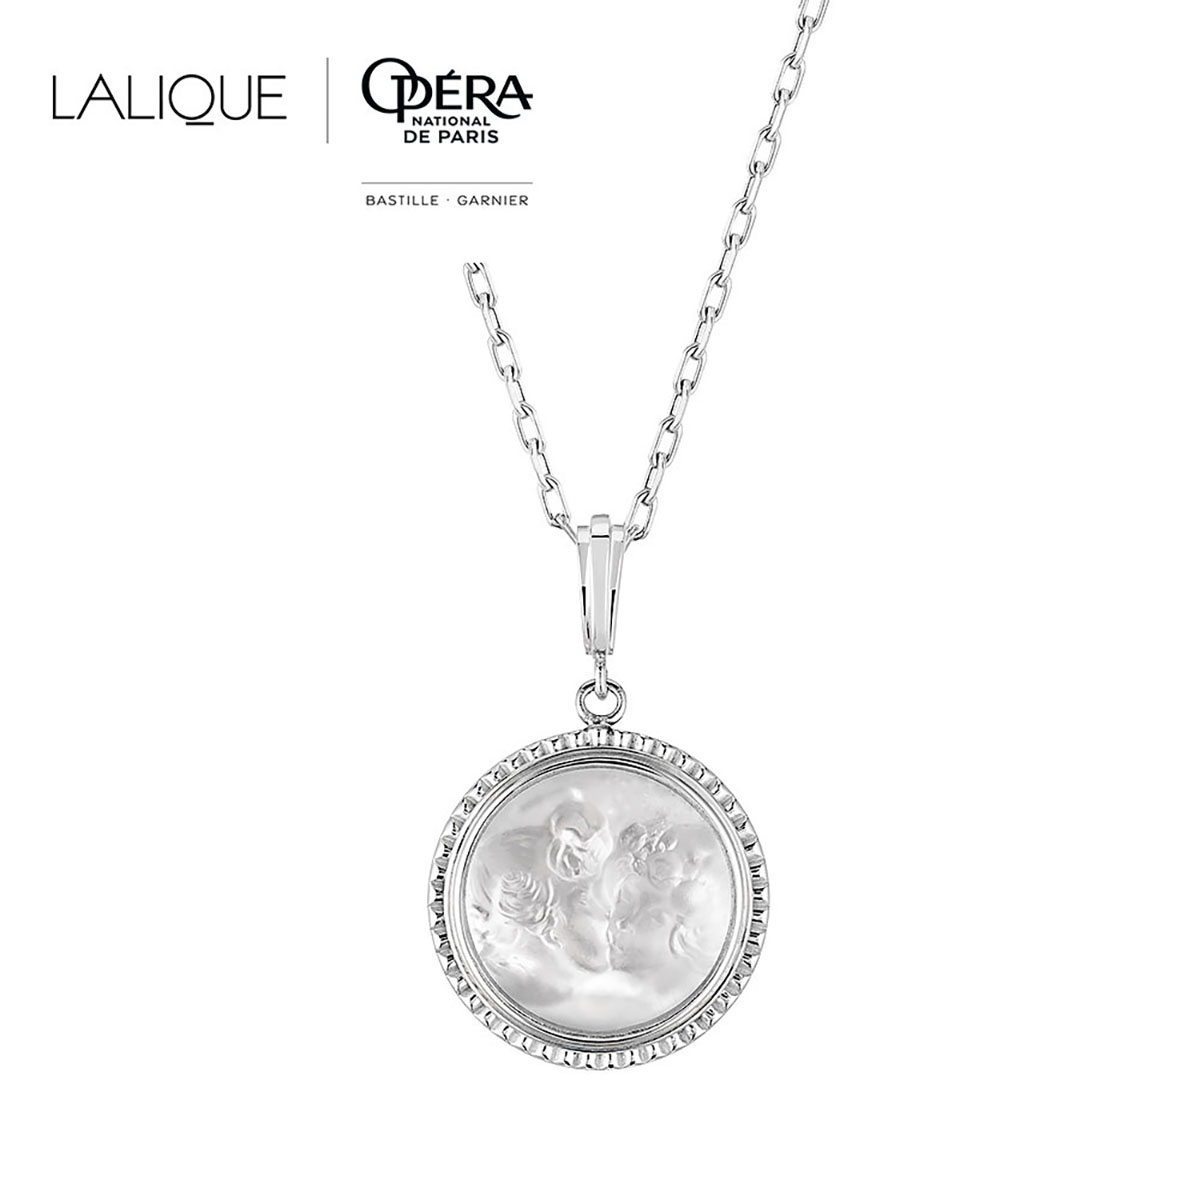 Lalique Le Baiser Pendant Necklace, Silver